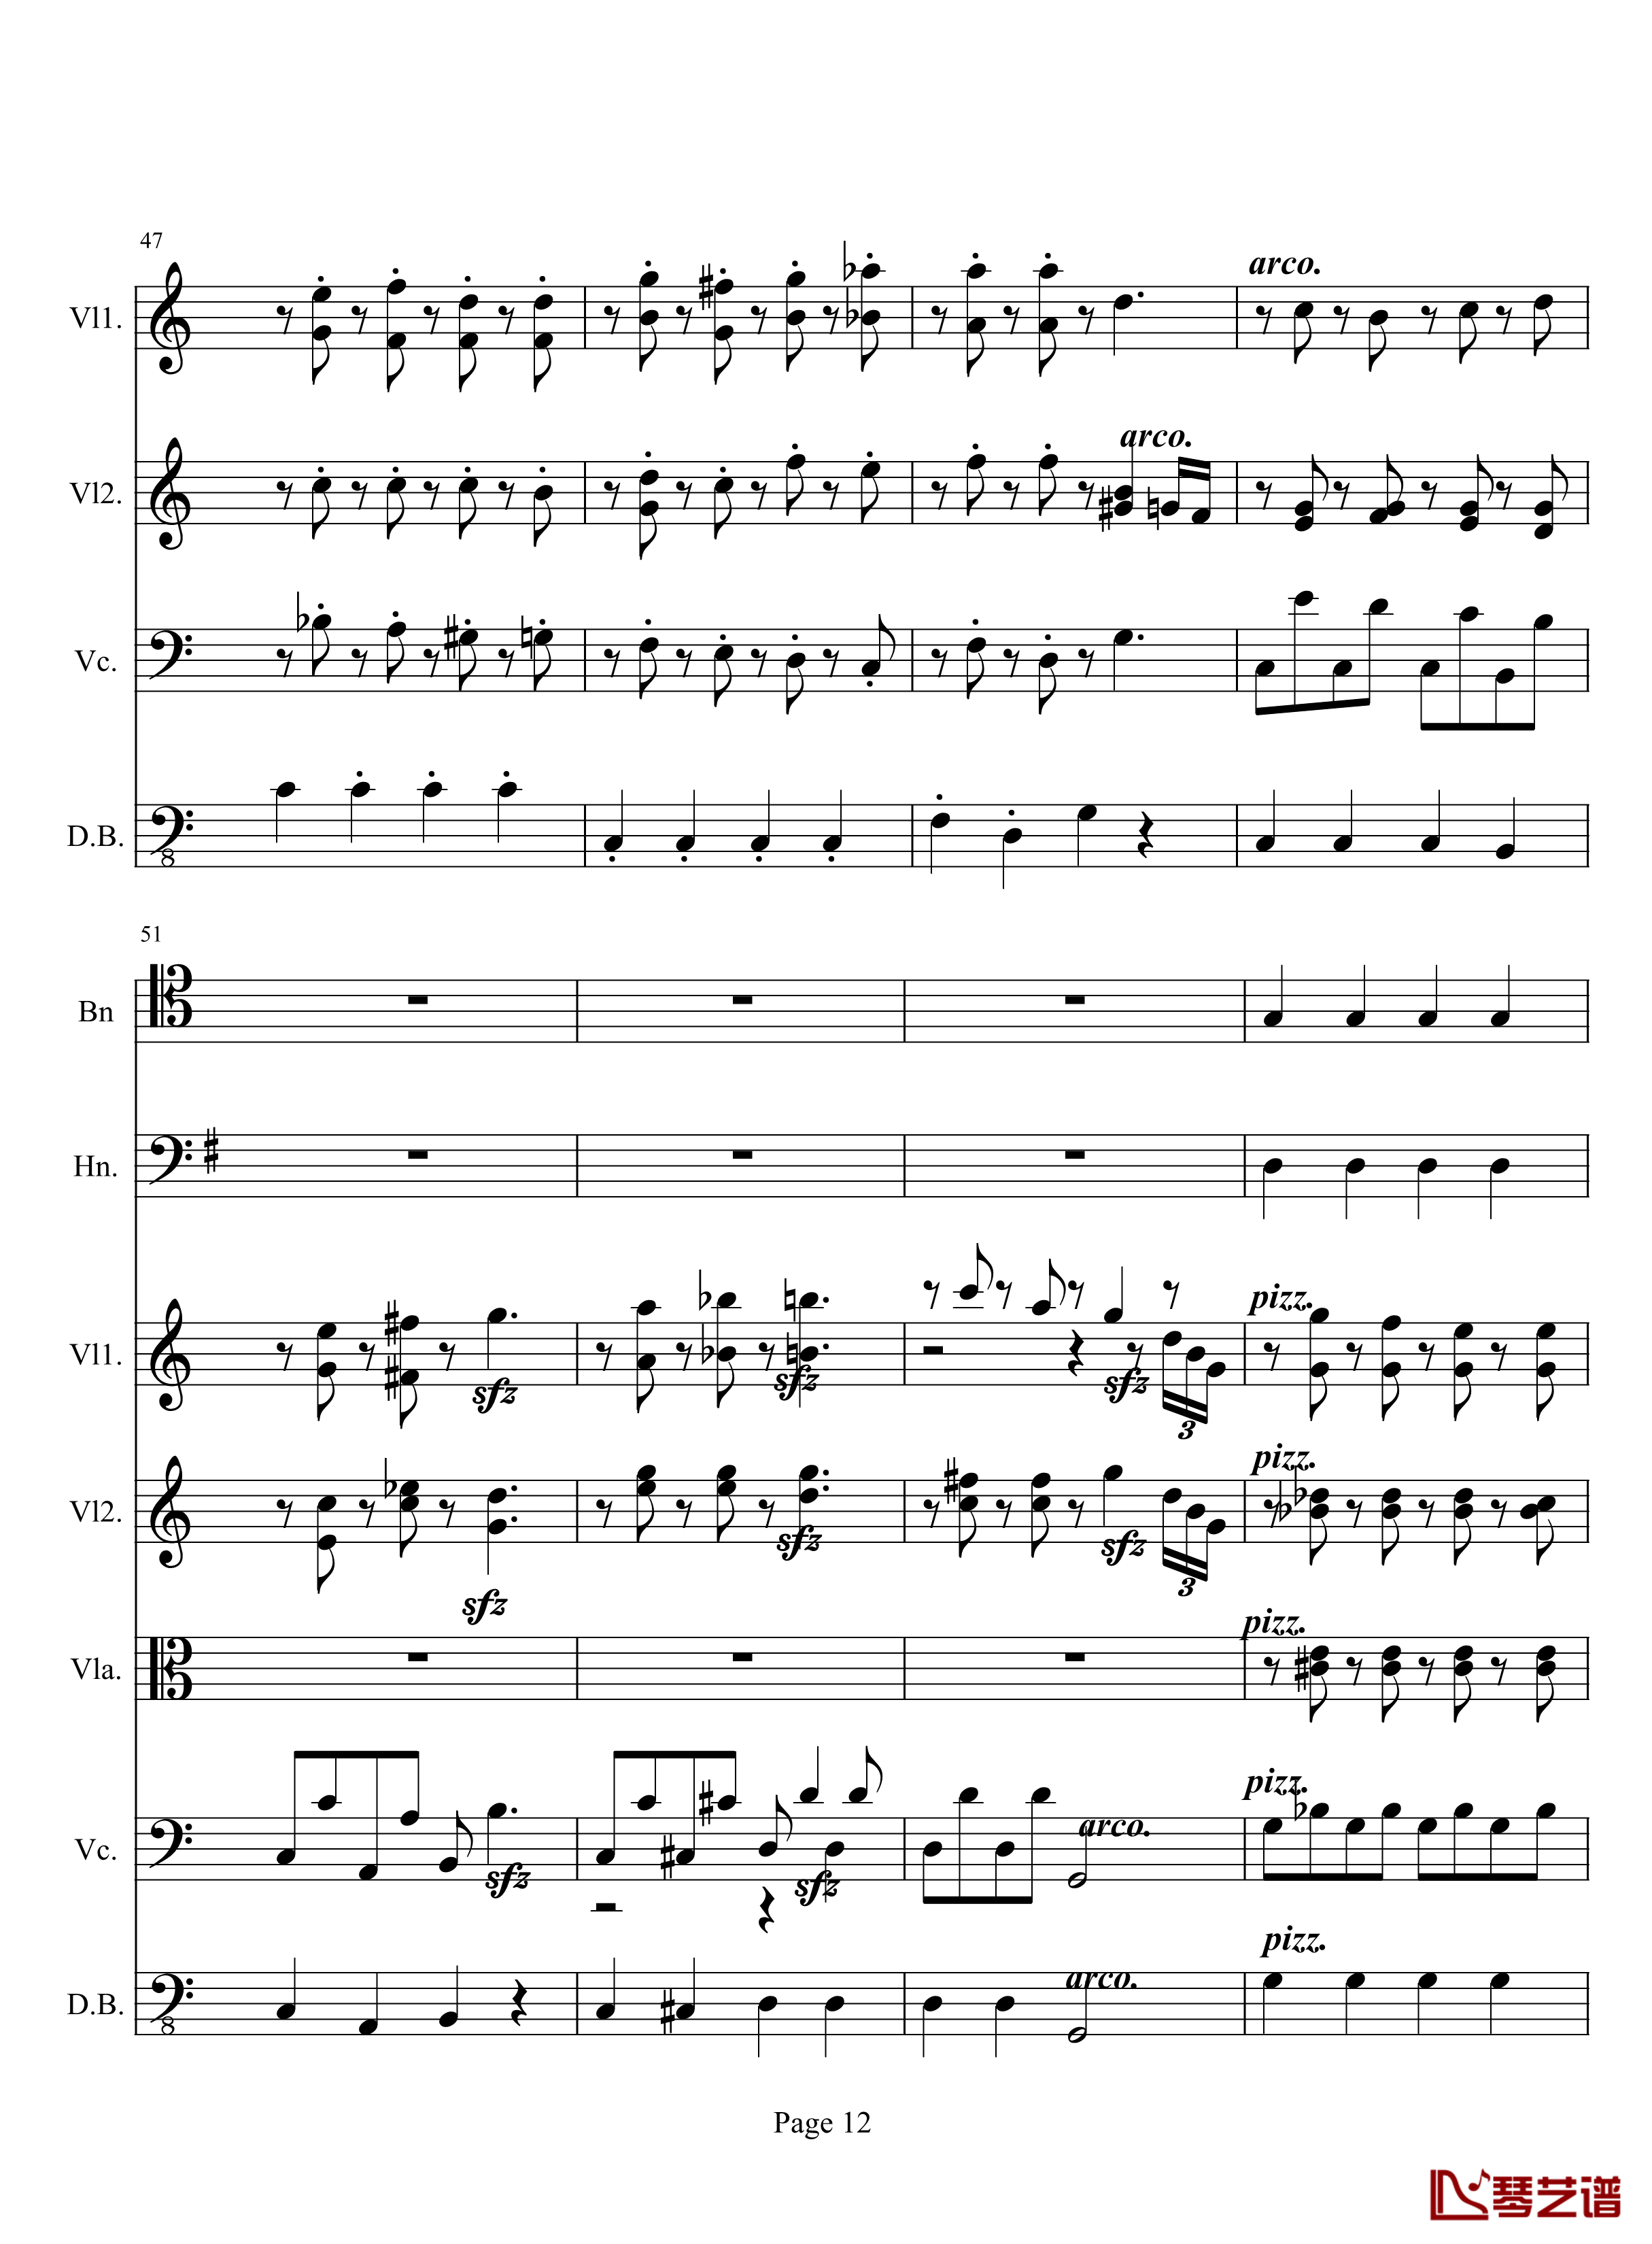 奏鸣曲之交响钢琴谱-第10首-2-贝多芬-beethoven12